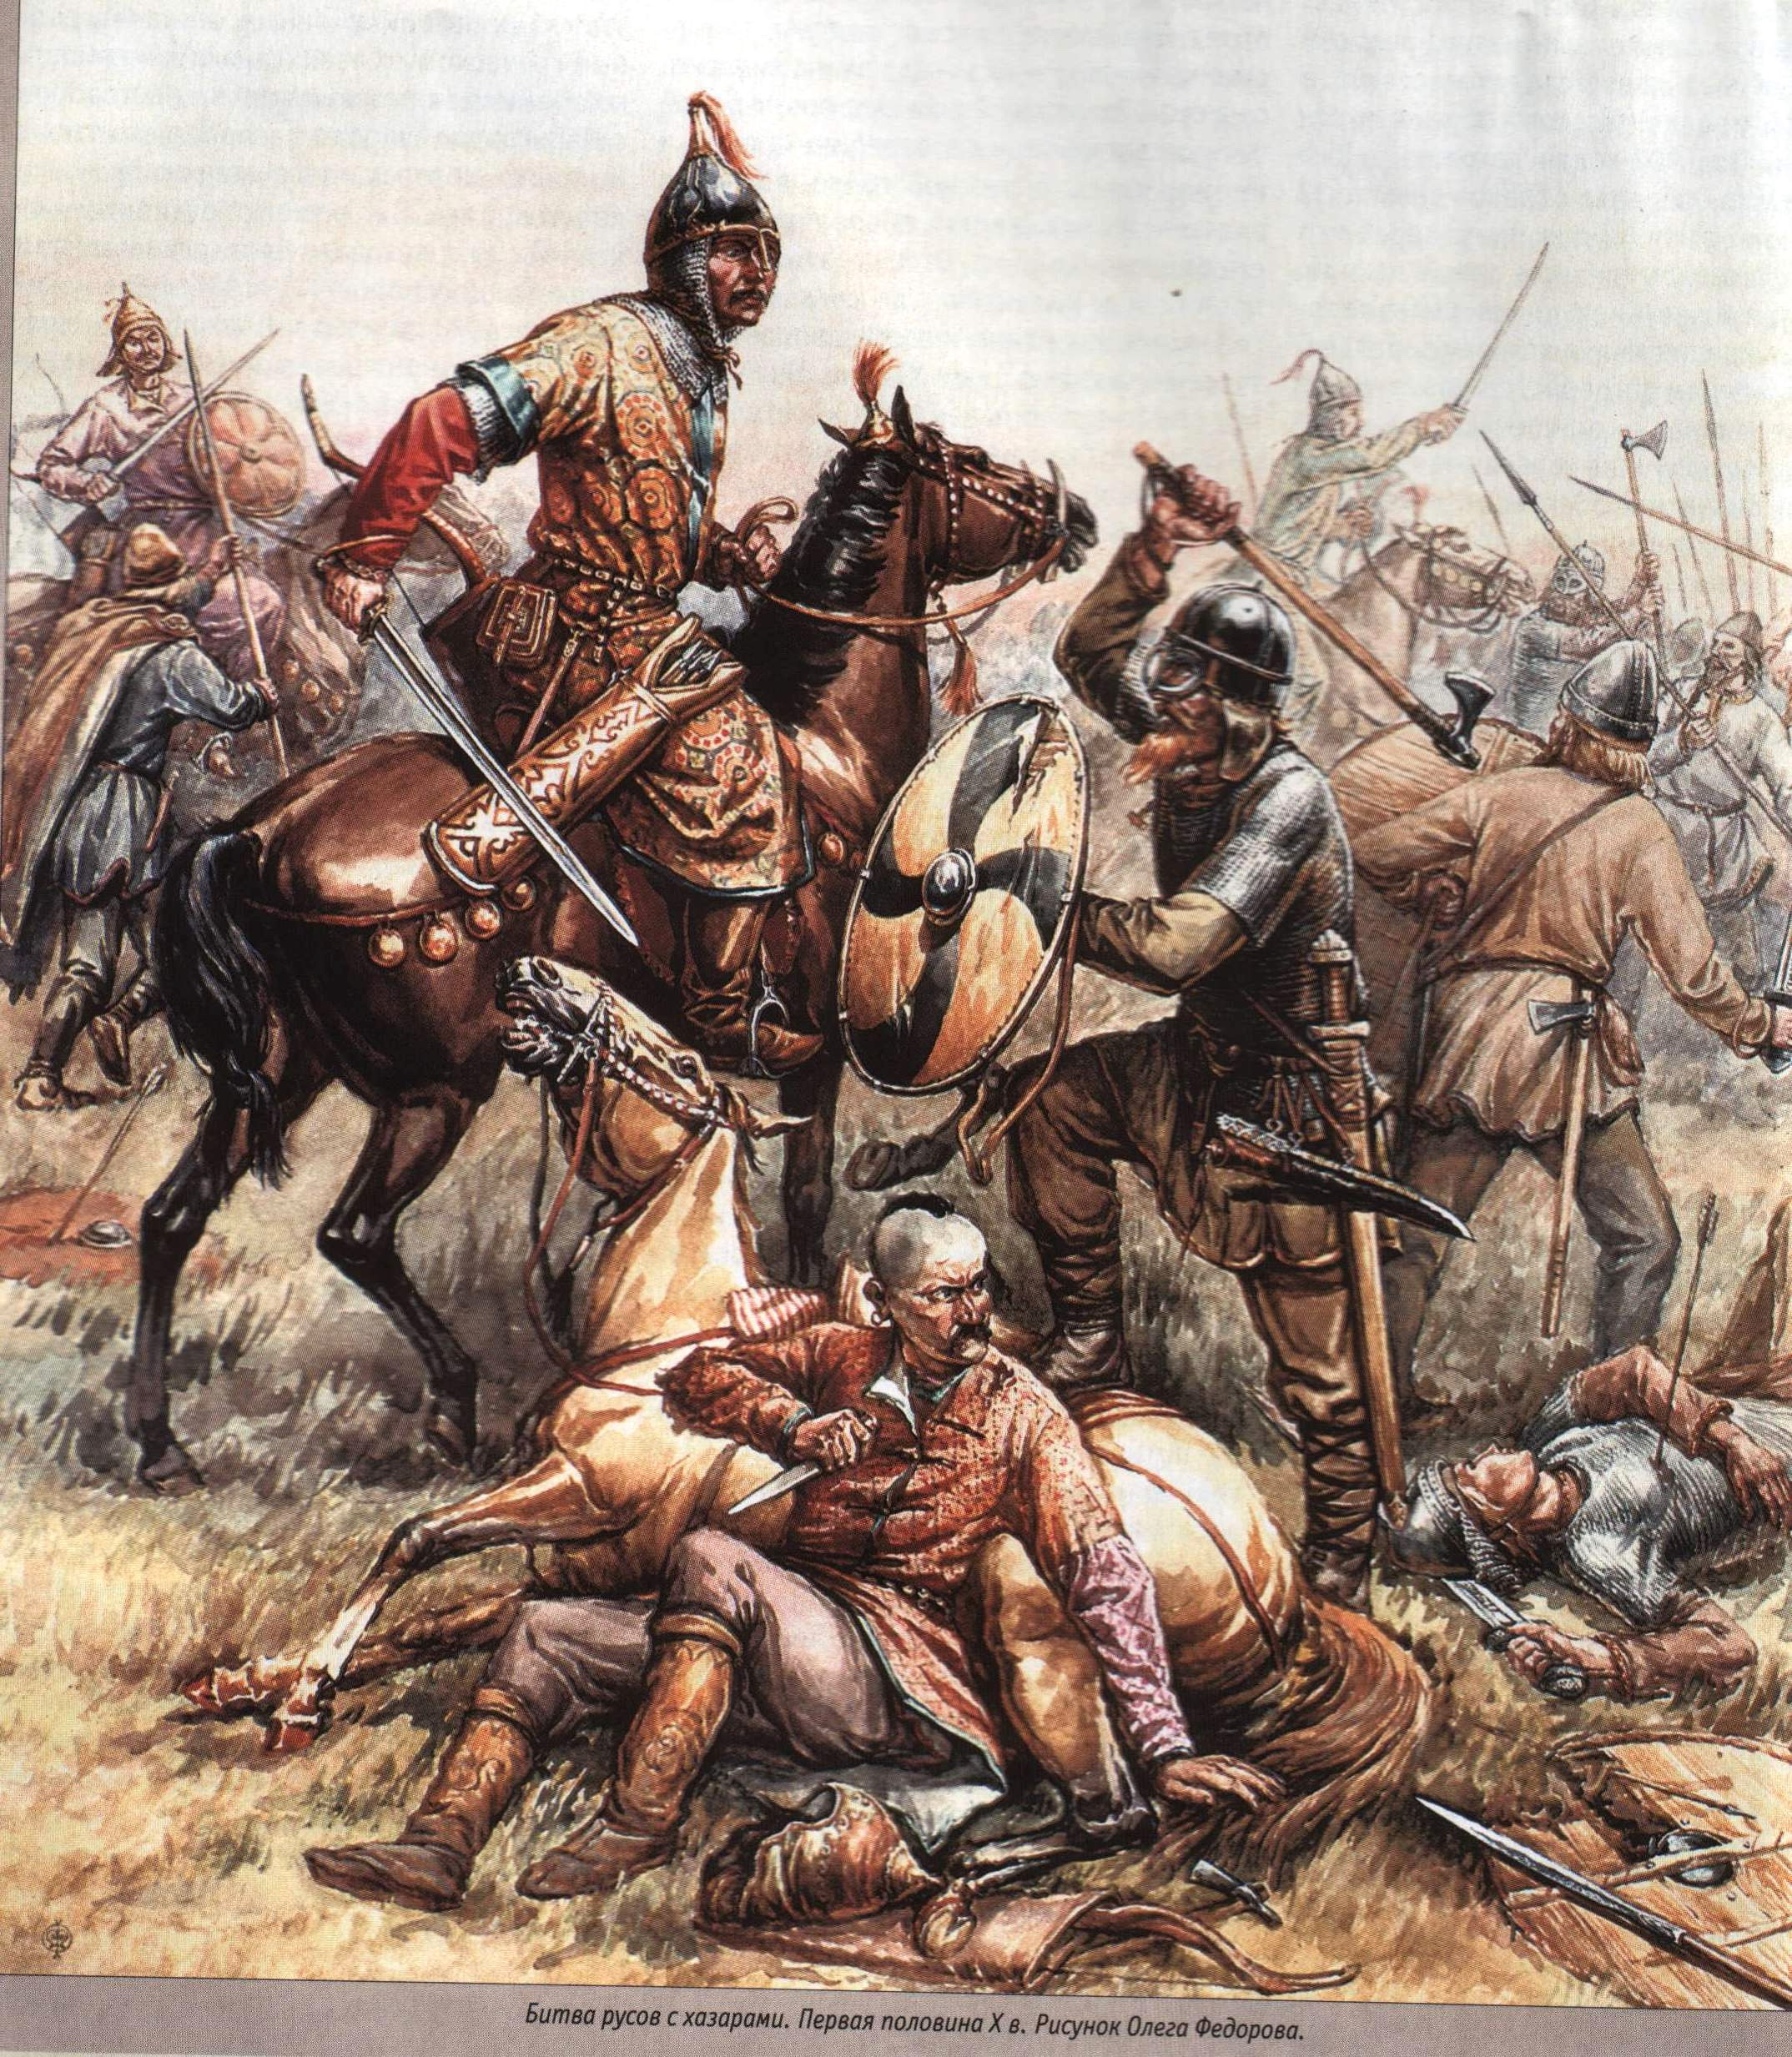 Монголы на северном кавказе. Хазарский воин / Khazar Warrior. Гунны Савиры.